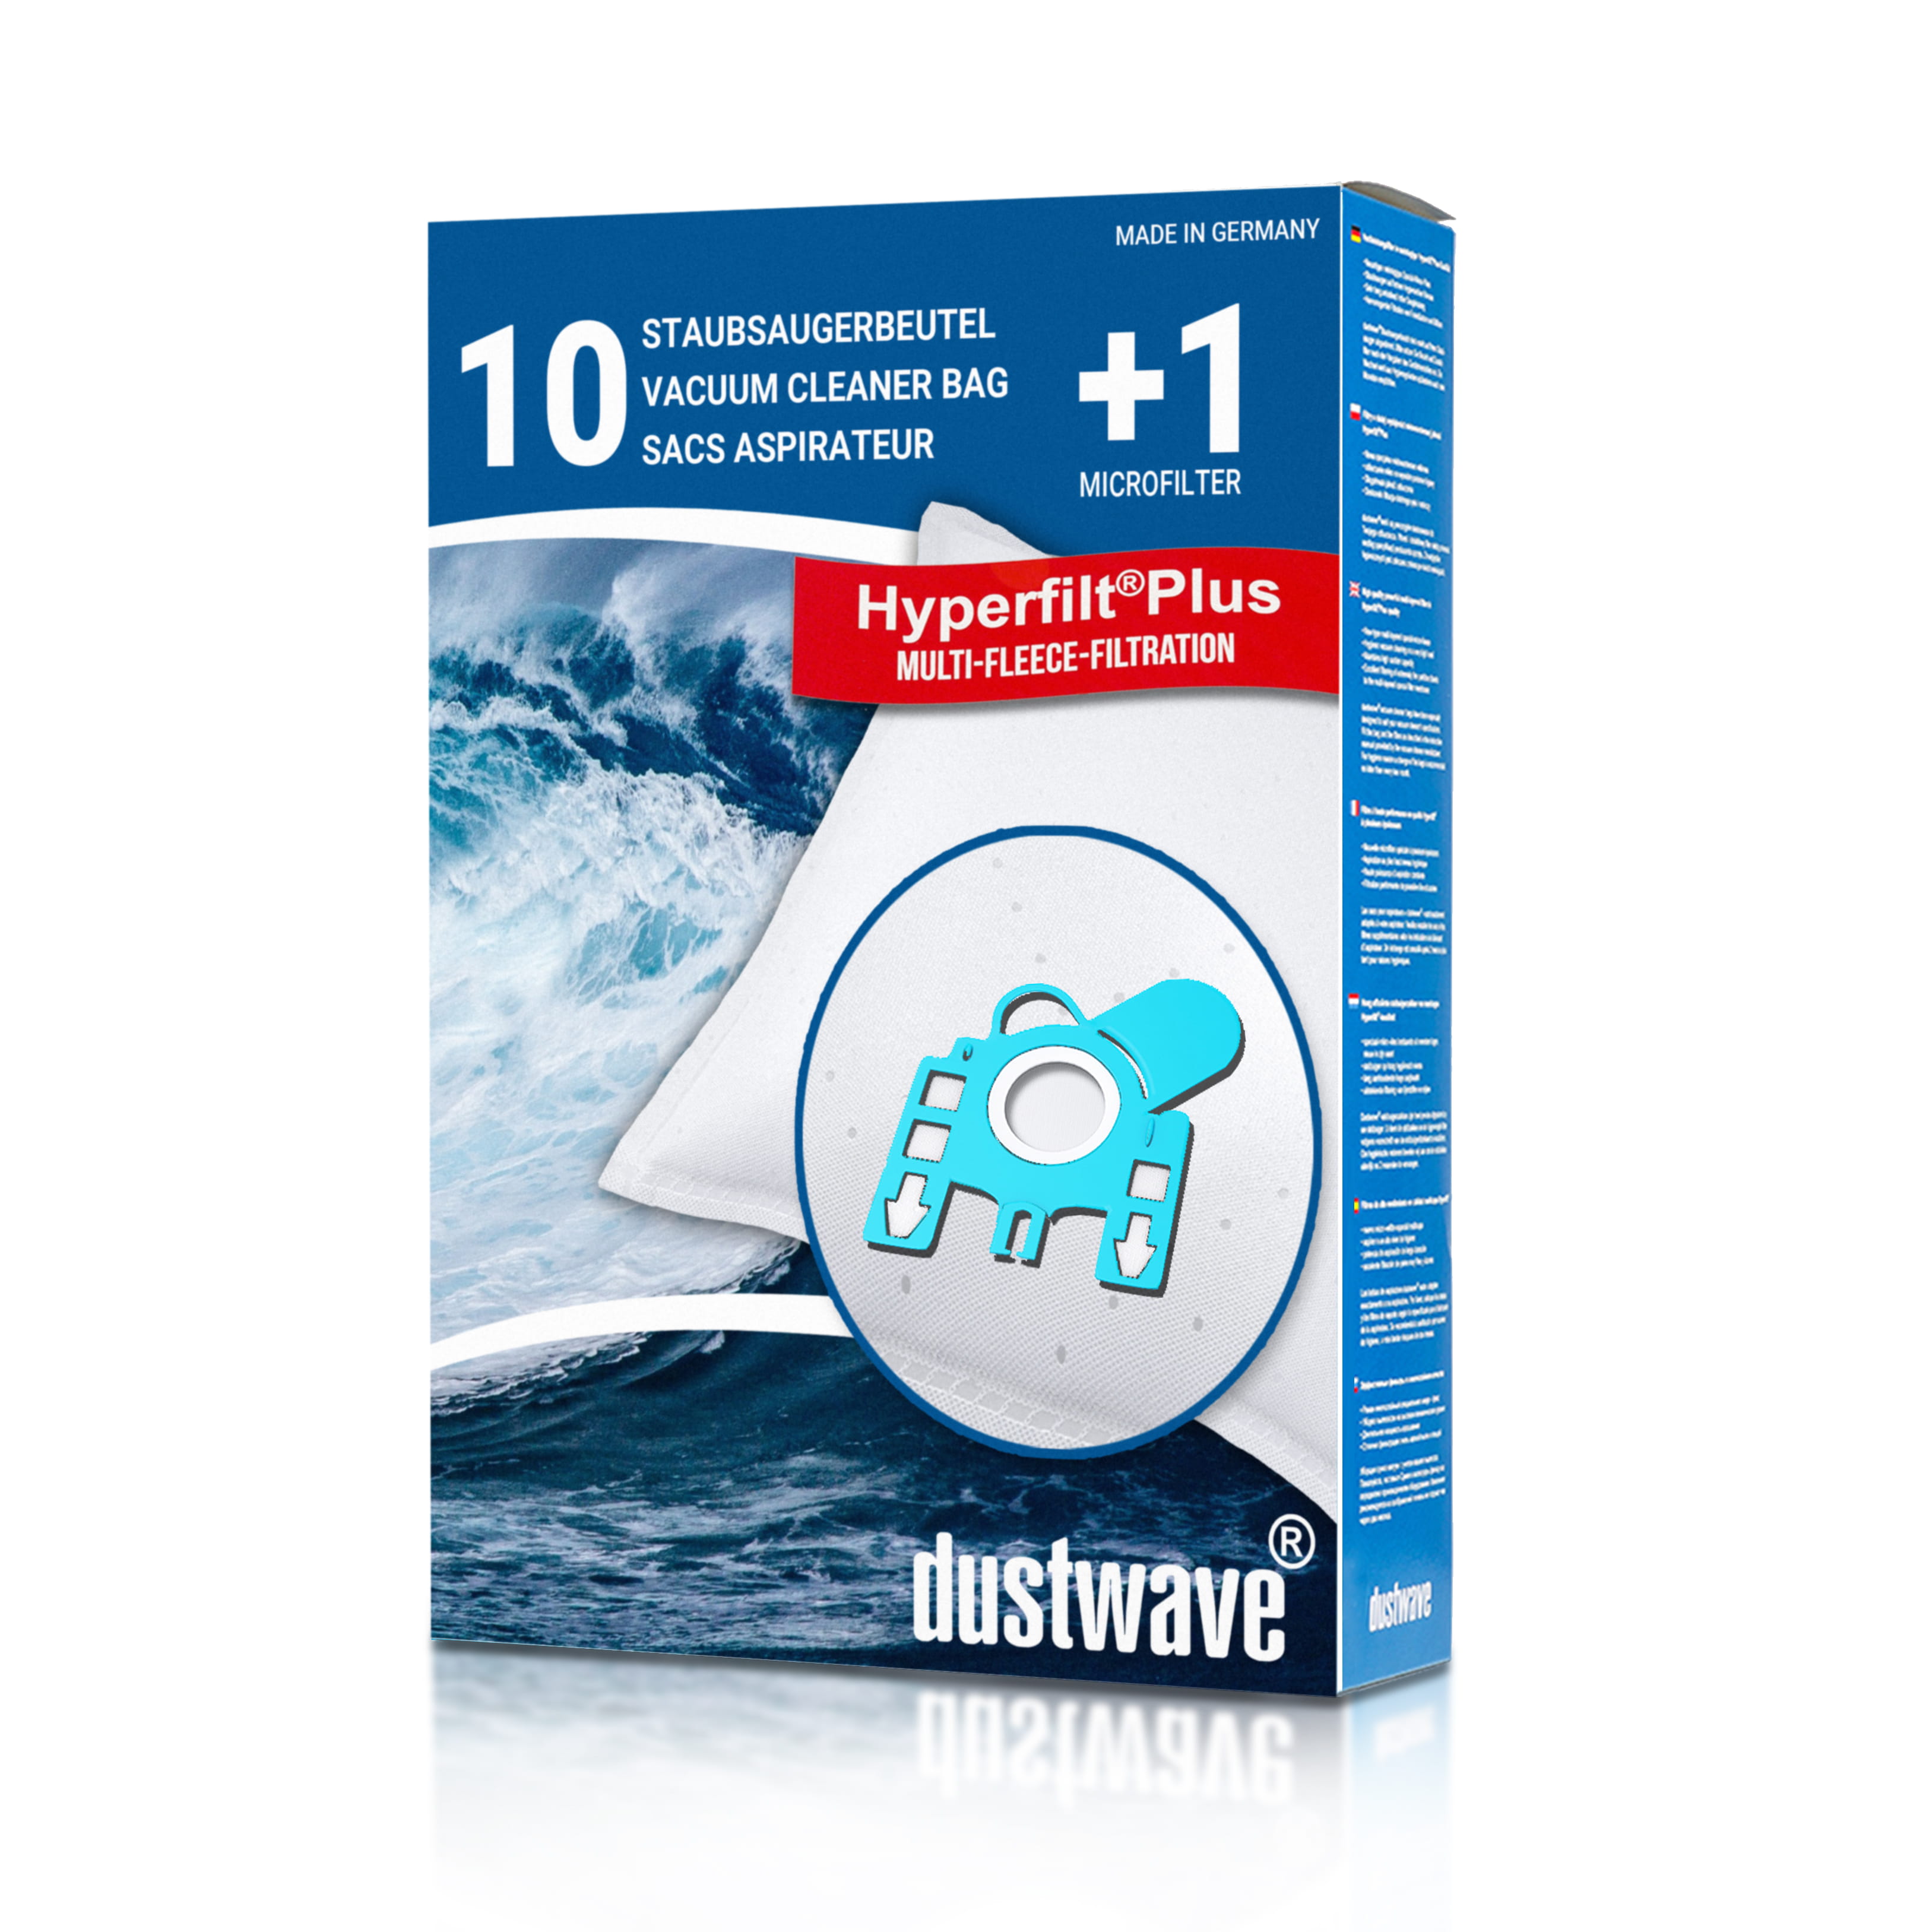 Dustwave® 10 Staubsaugerbeutel für Hoover H 73 / H73 - hocheffizient, mehrlagiges Mikrovlies mit Hygieneverschluss - Made in Germany